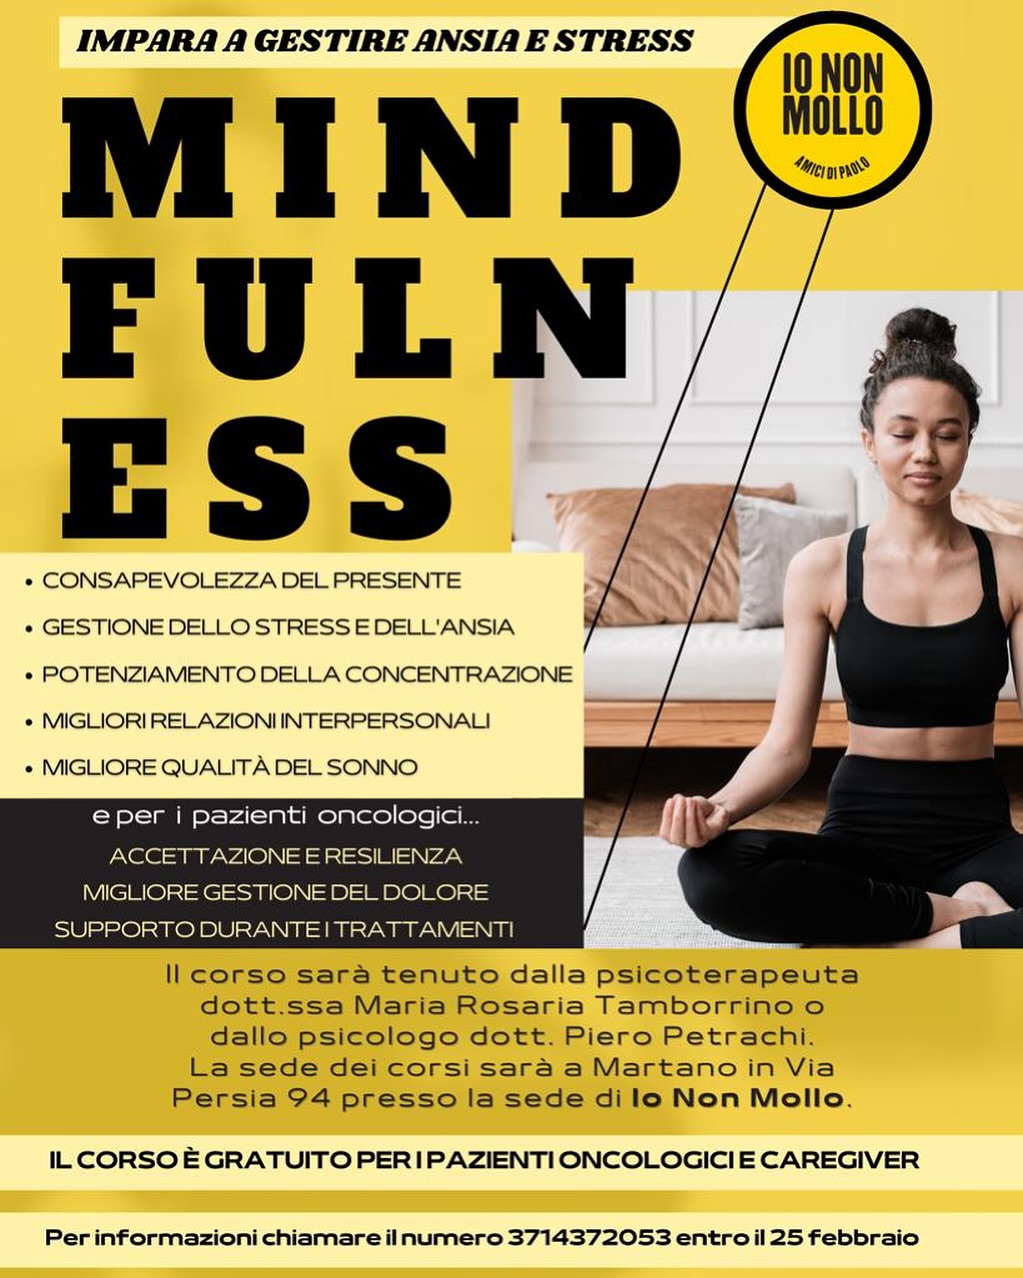 image from Percorsi di Mindfulness - Associazione Io Non Mollo